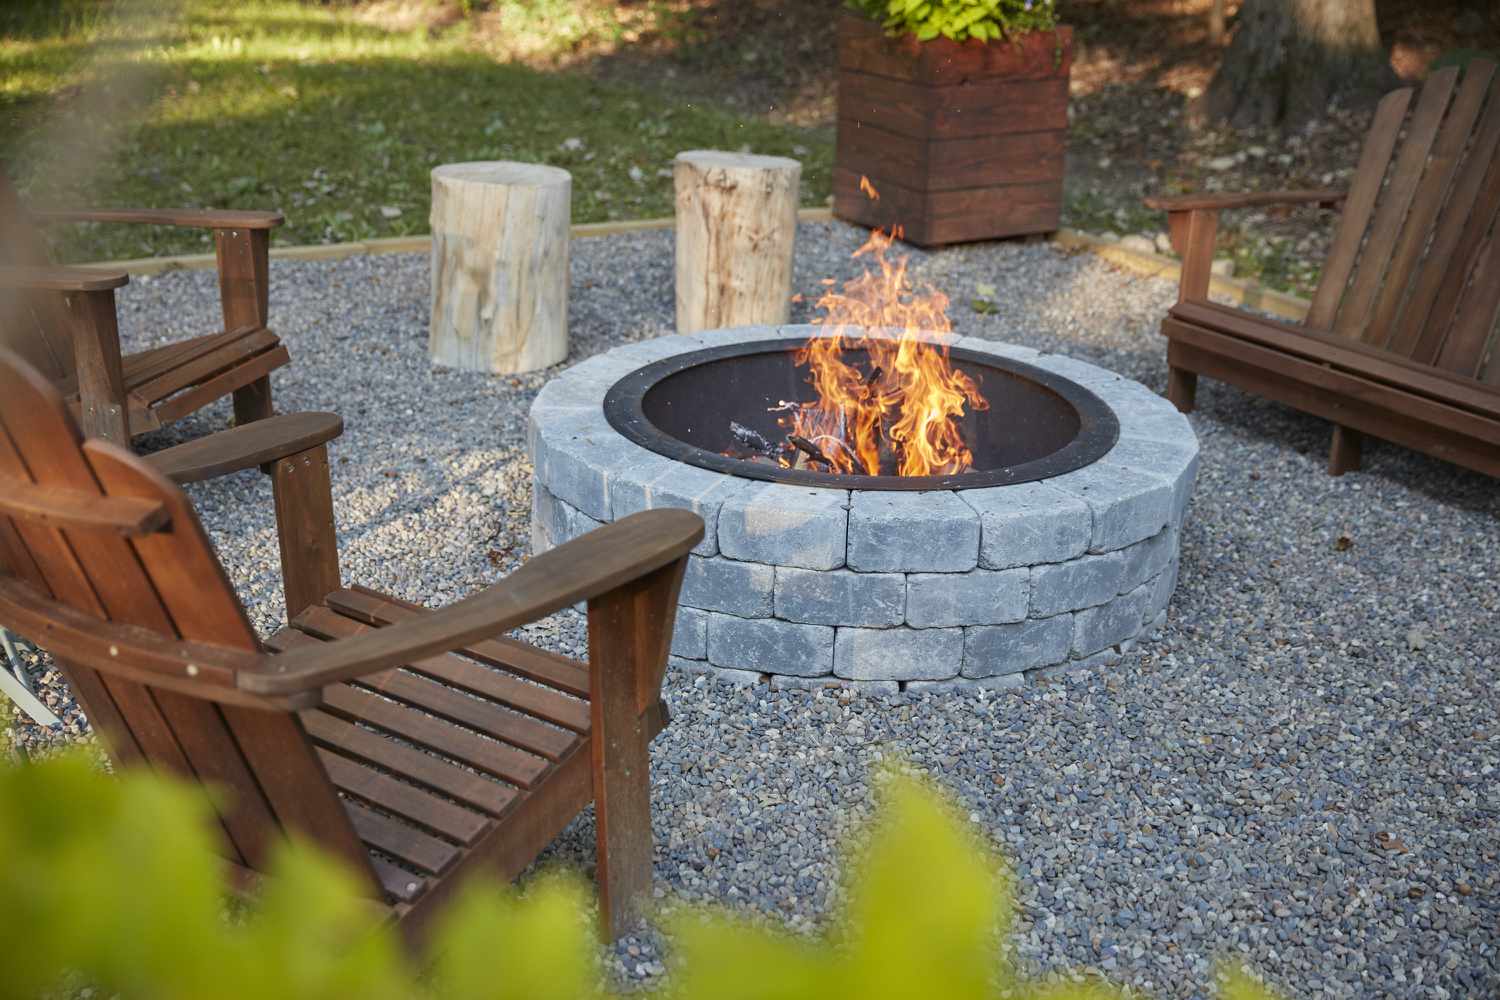 Pozo de fuego con piedras gris claro rodeado de sillas de madera y fuego 